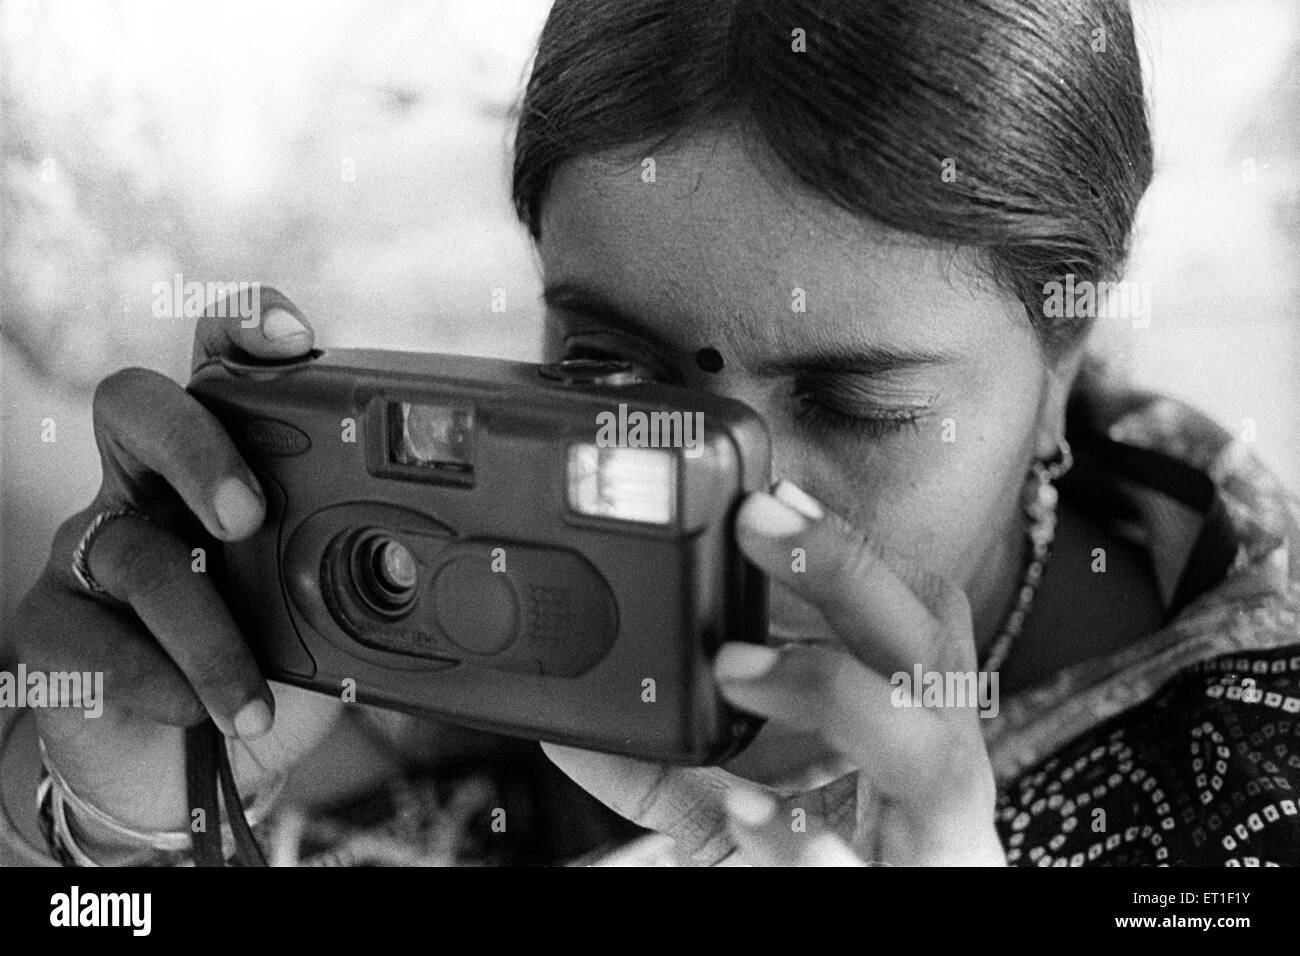 Les jeunes femmes essayant d'apprendre la photographie ; Chitrakoot ; Uttar Pradesh ; Inde PAS DE MR Banque D'Images